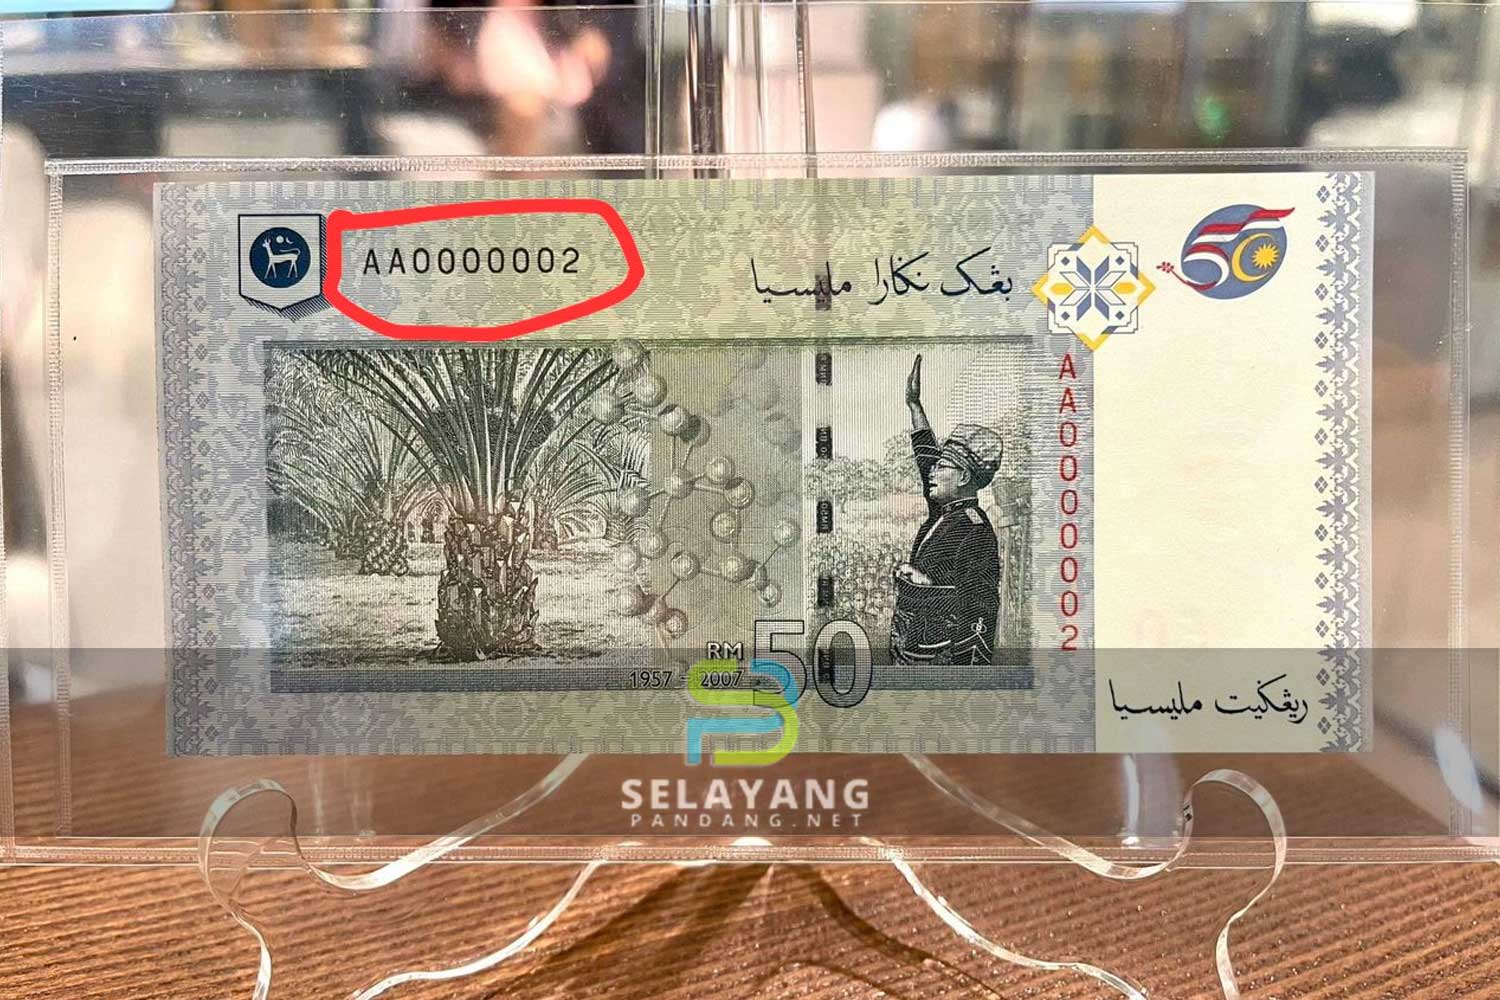 Wang kertas RM50 dijual harga RM708,000 sekeping, ini kelebihan yang ada sampai boleh dijual harga tinggi